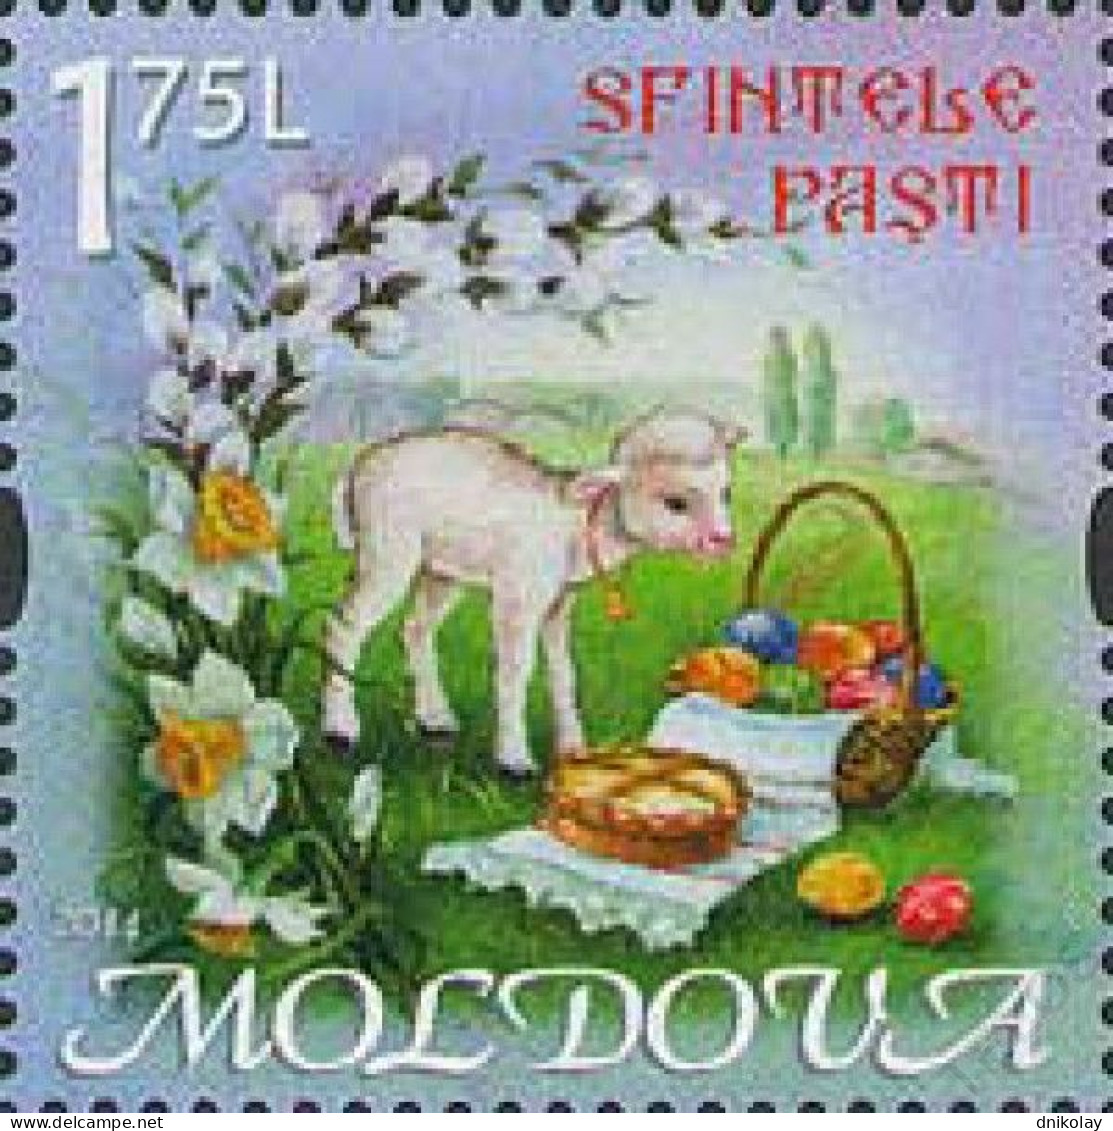 2014 871 Moldova Easter MNH - Moldawien (Moldau)